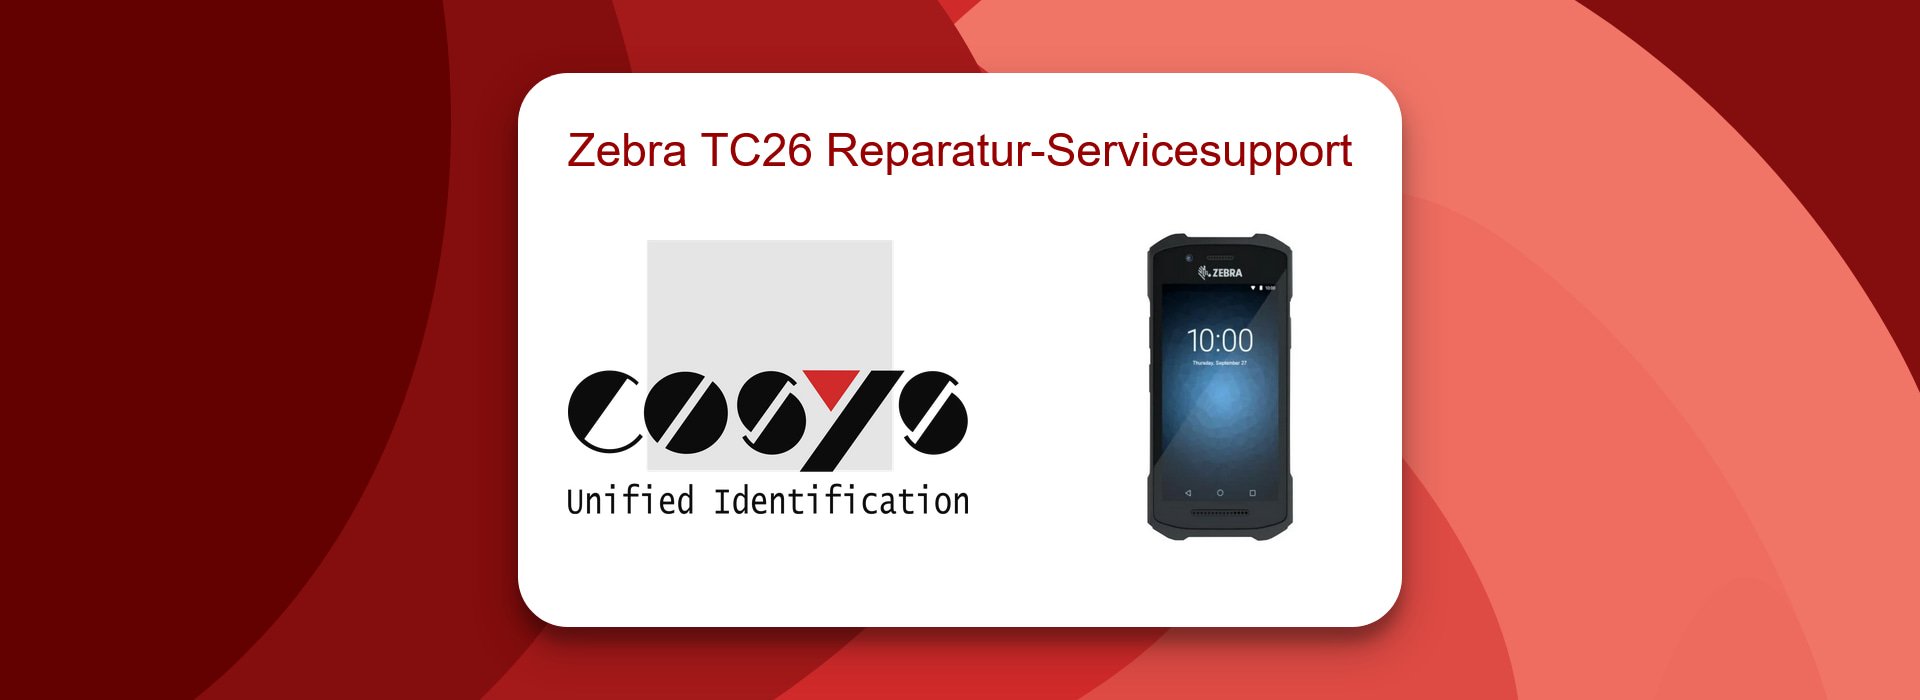 Zebra TC26 Reparatur-Servicesupport